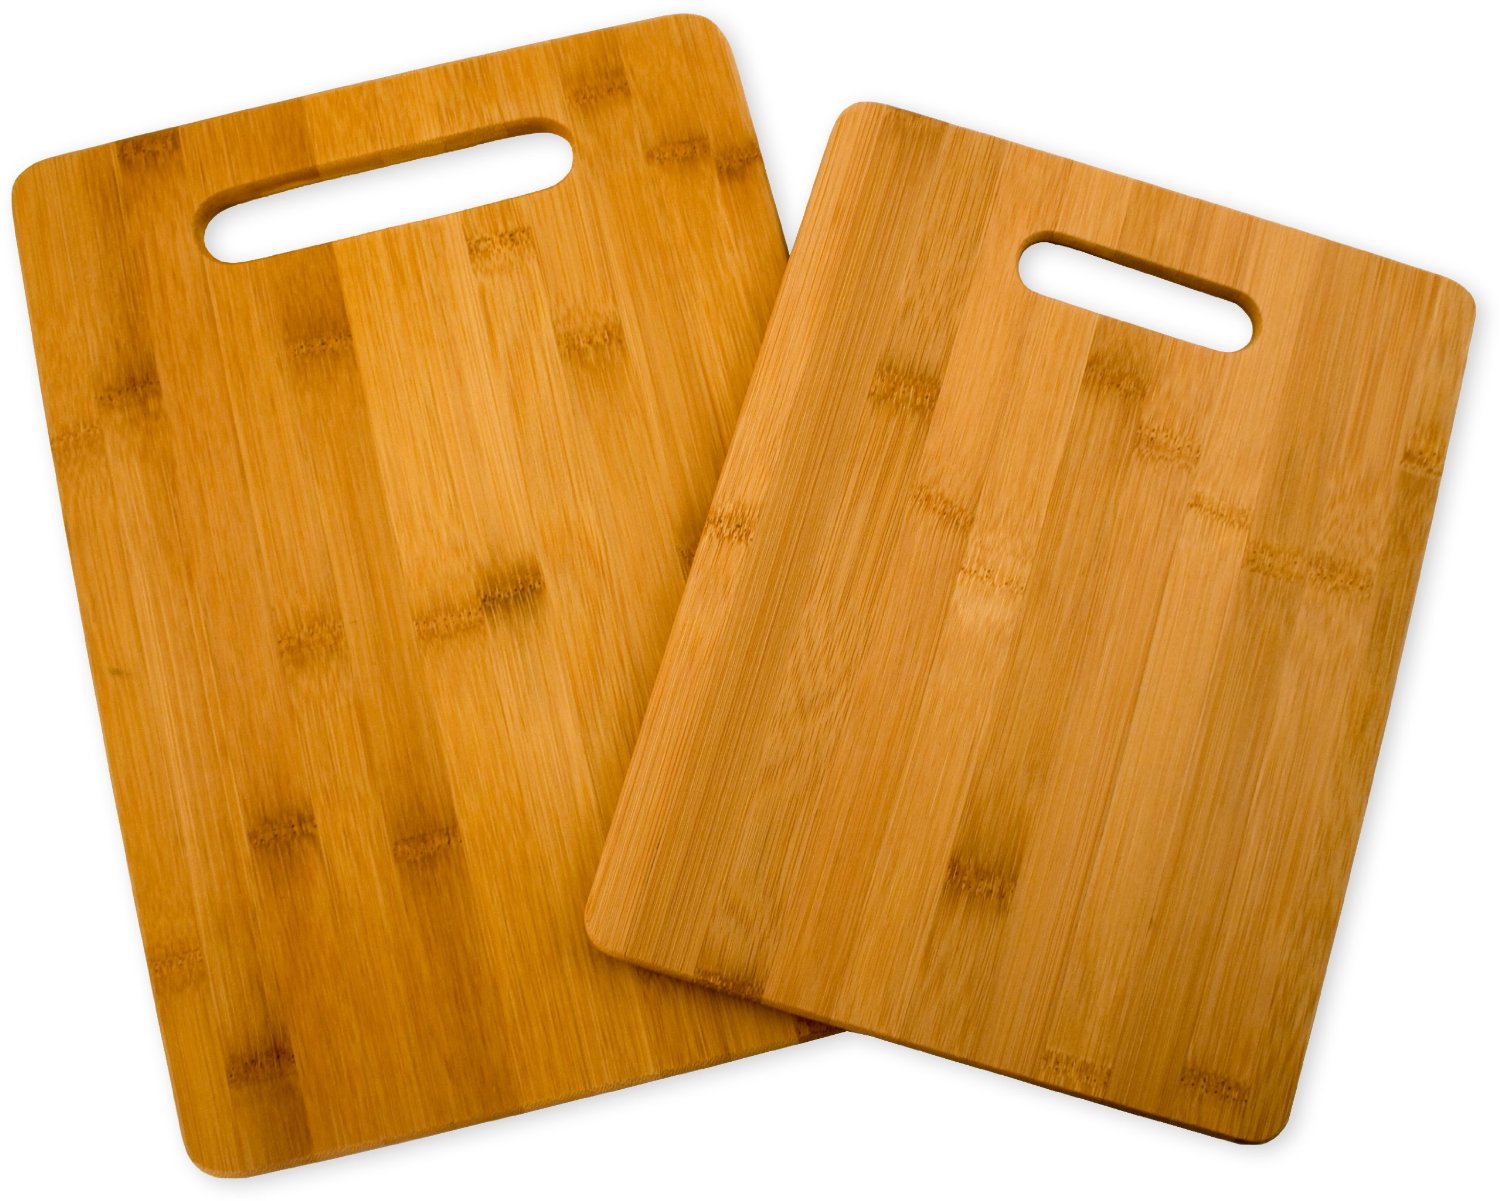 Best Wood Cutting Board